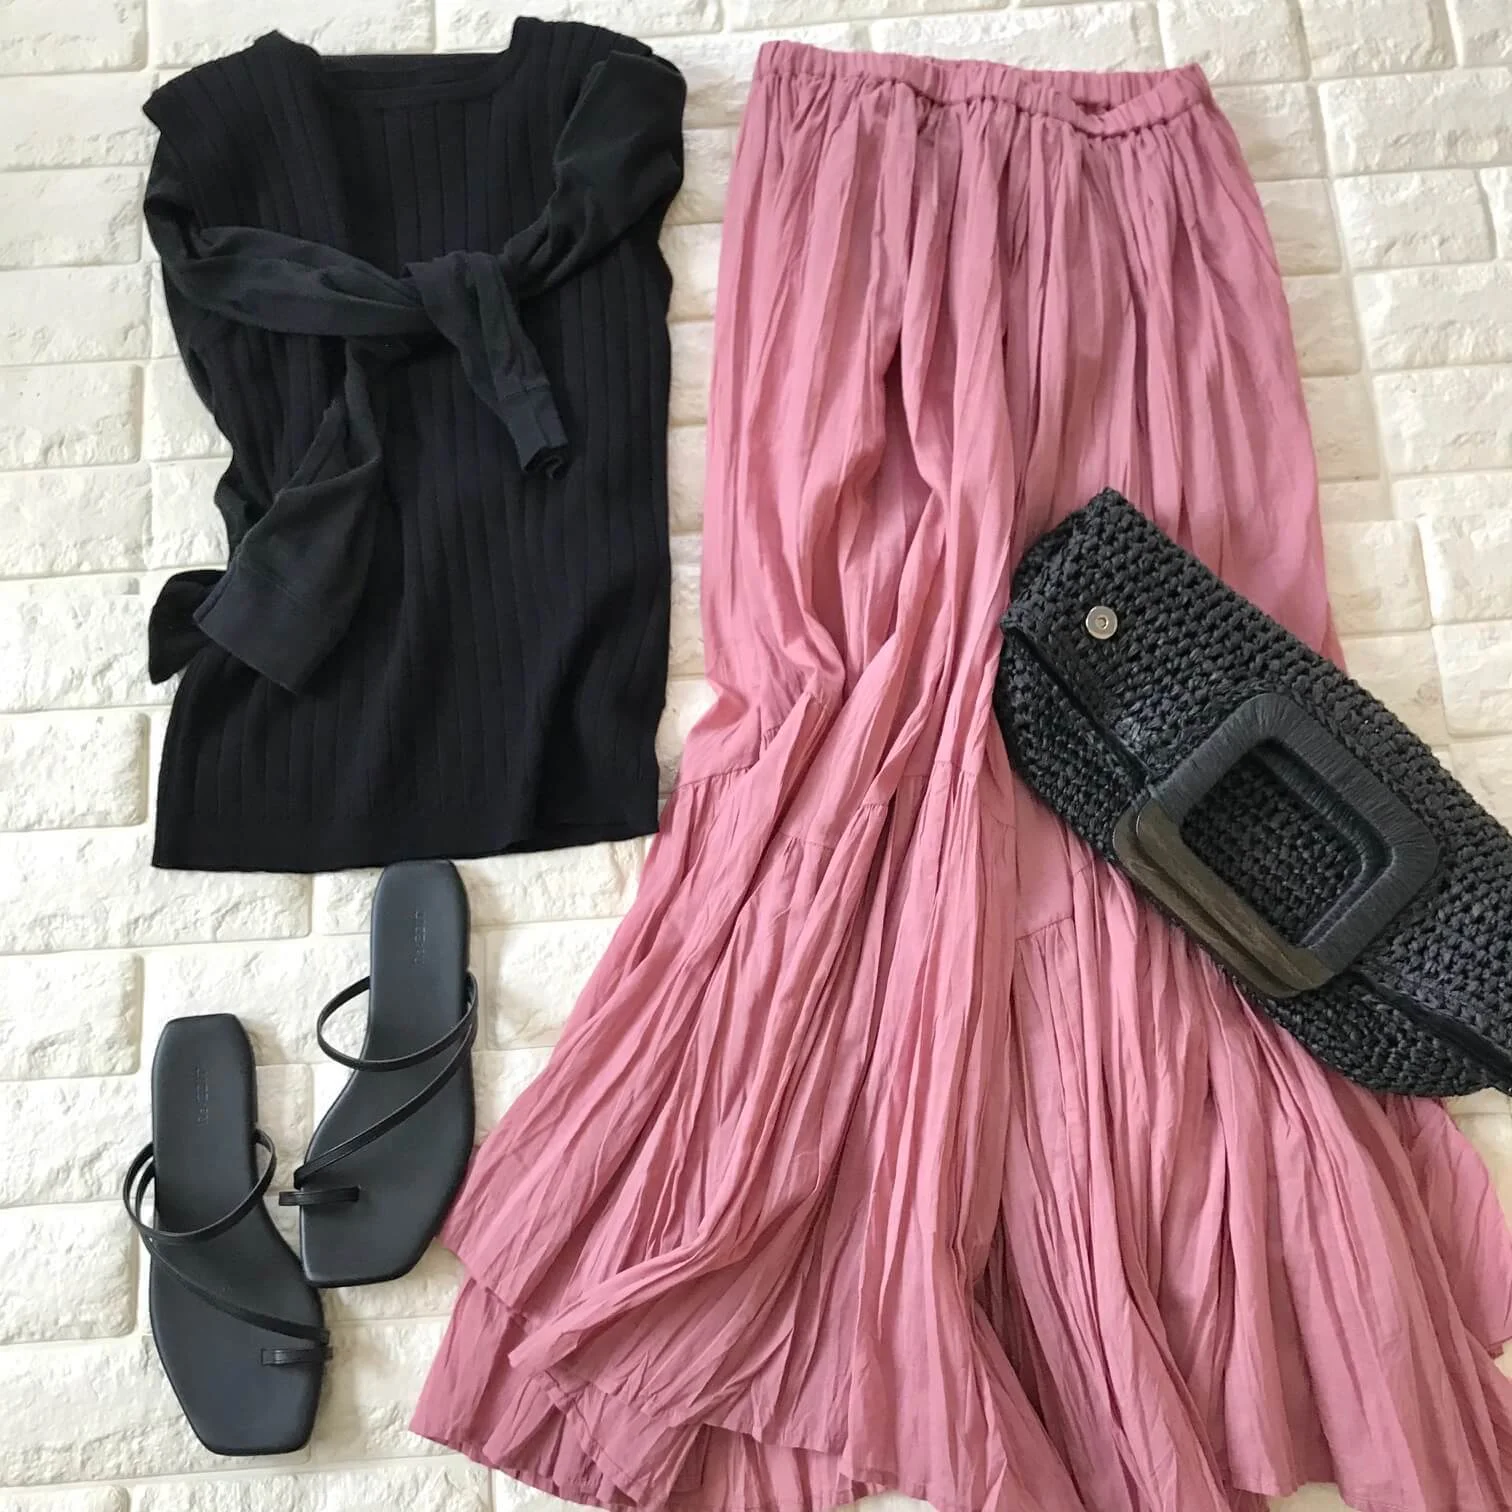 ザ・バージニアのピンクスカートと黒を合わせたコーデ